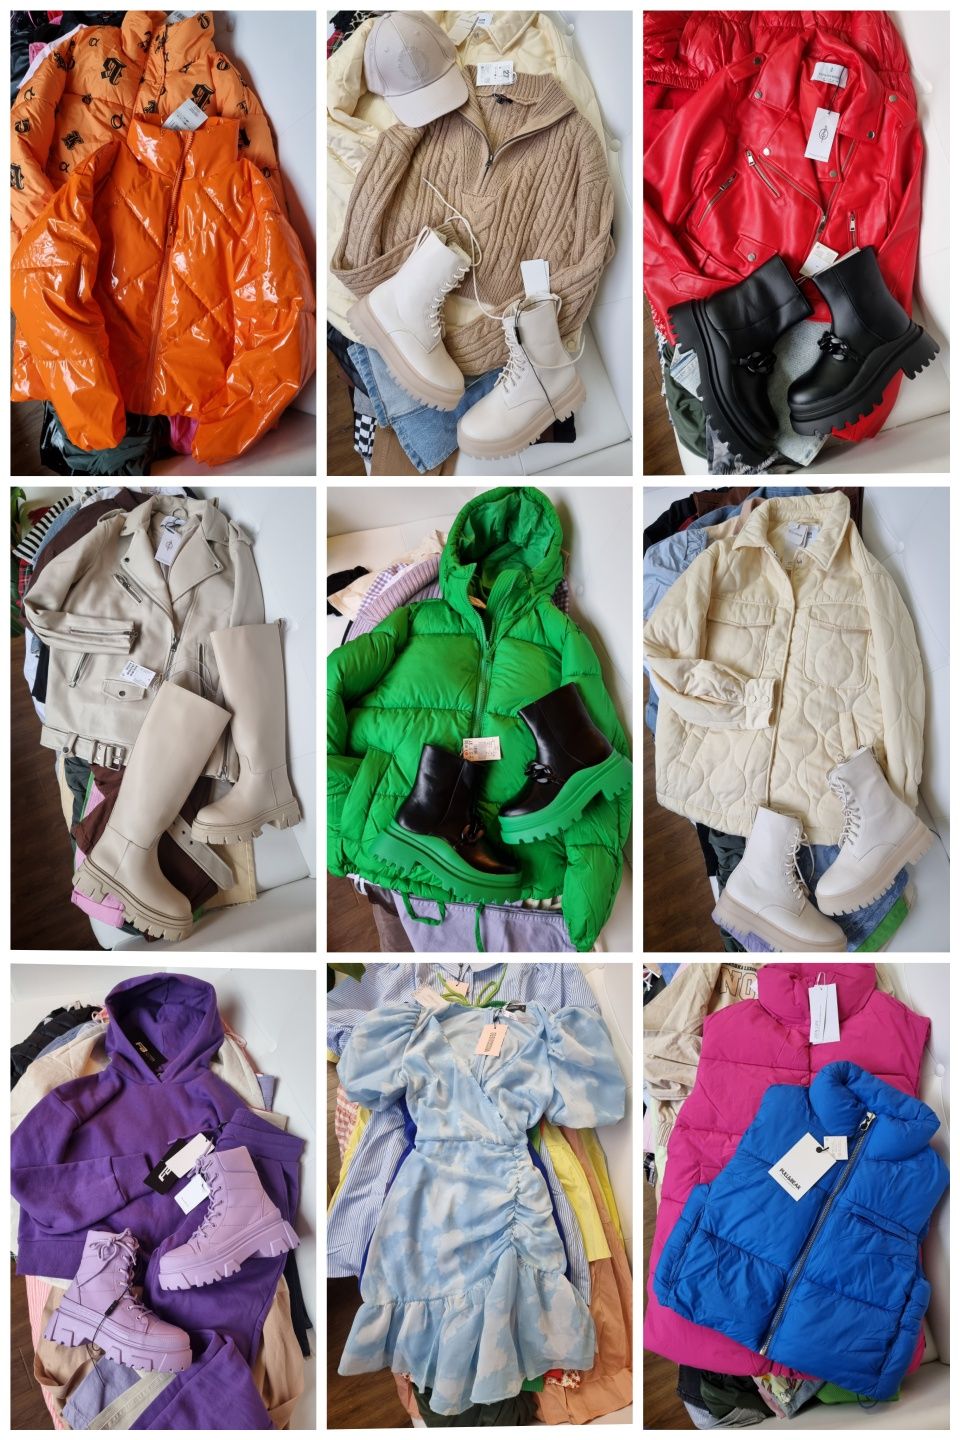 Женская одежда оптом, сток оптом, куртки Опт, Опт Украина, пальто Опт